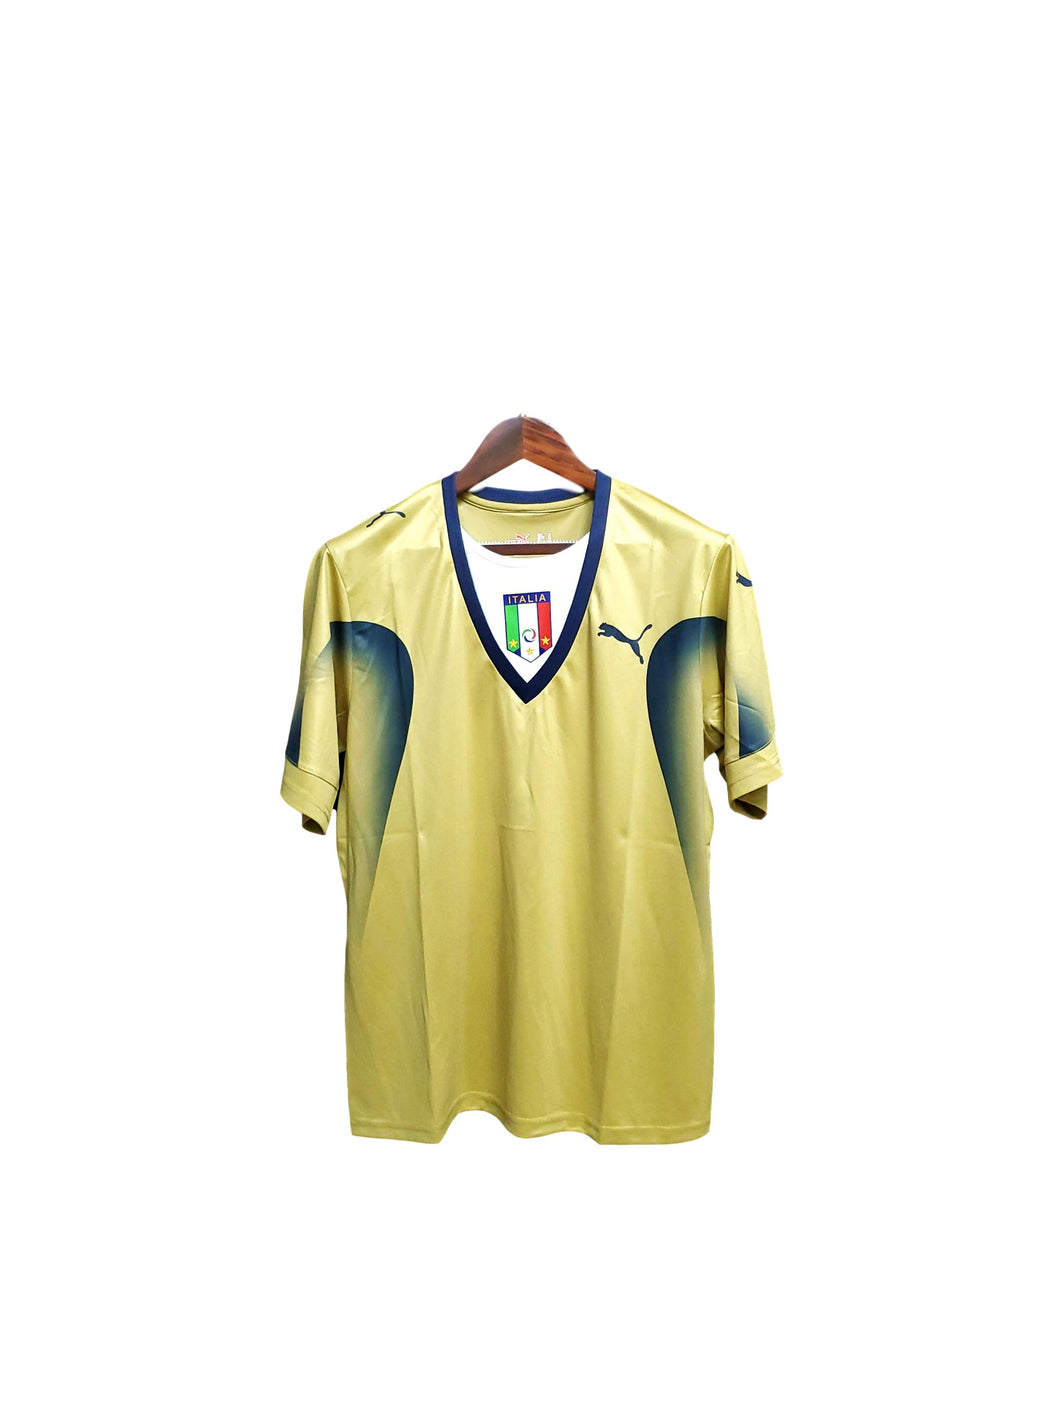 Camisa Itália 2006 Retrô Torcedor